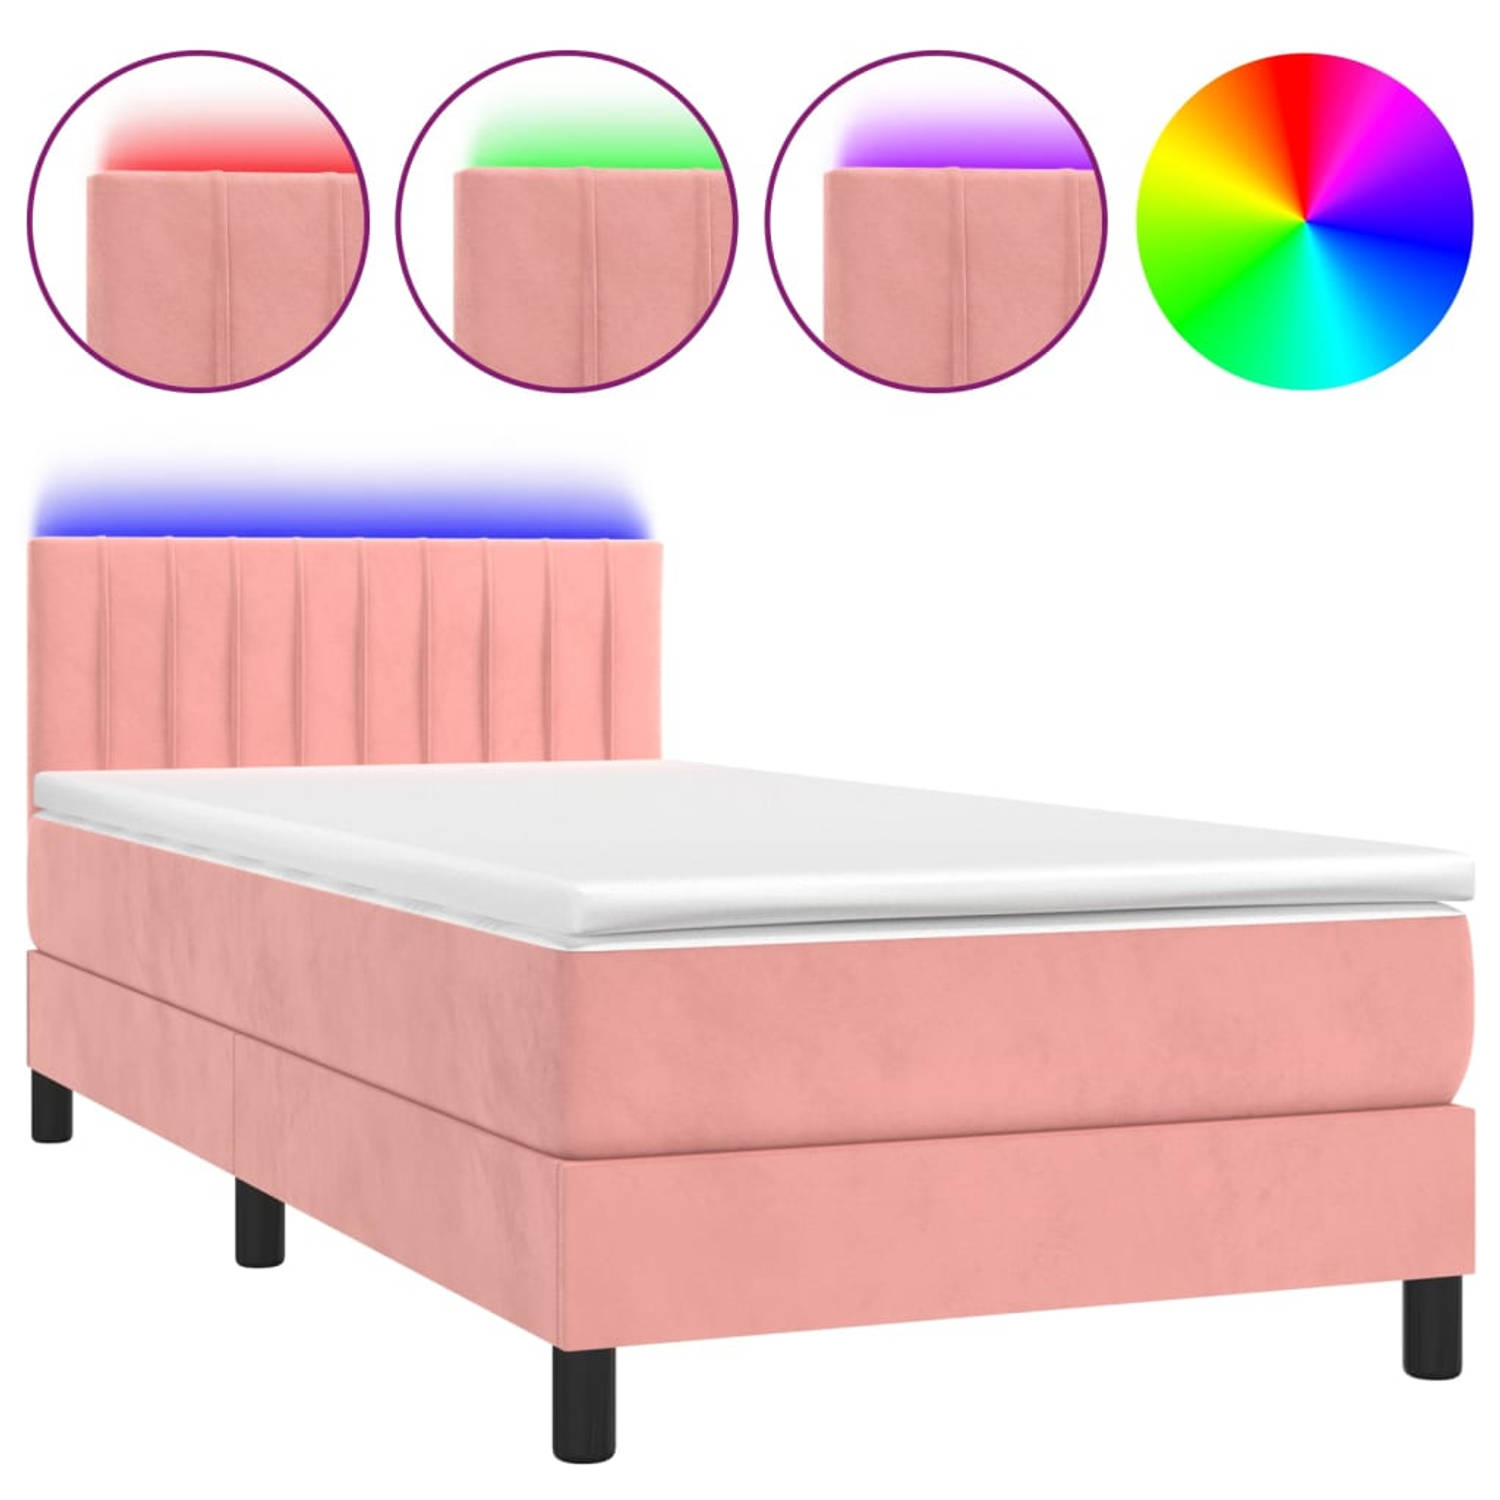 The Living Store Bed Fluweel - Bedframe 203x90x78/88cm - Pocketvering Matras 90x200x20cm - Wit/Roze Fluweel - LED Strip